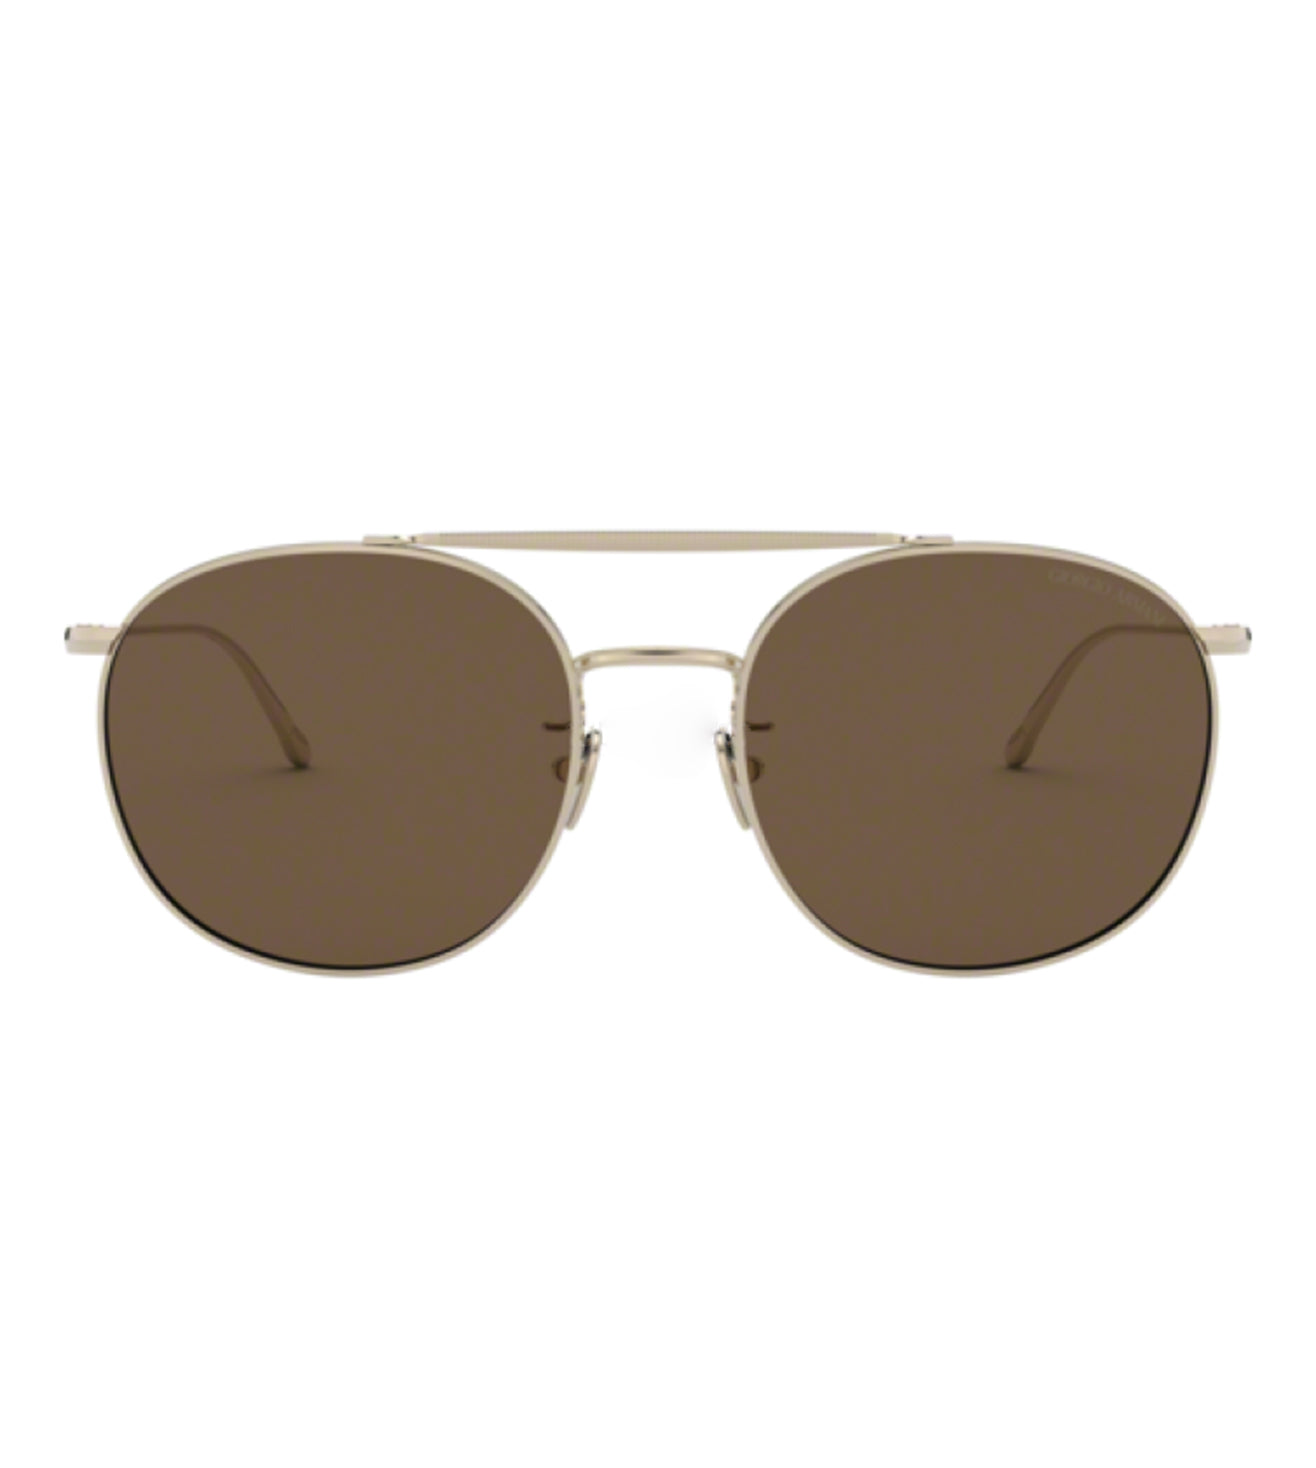 Giorgio Armani Men's Brown Aviator Sunglasses